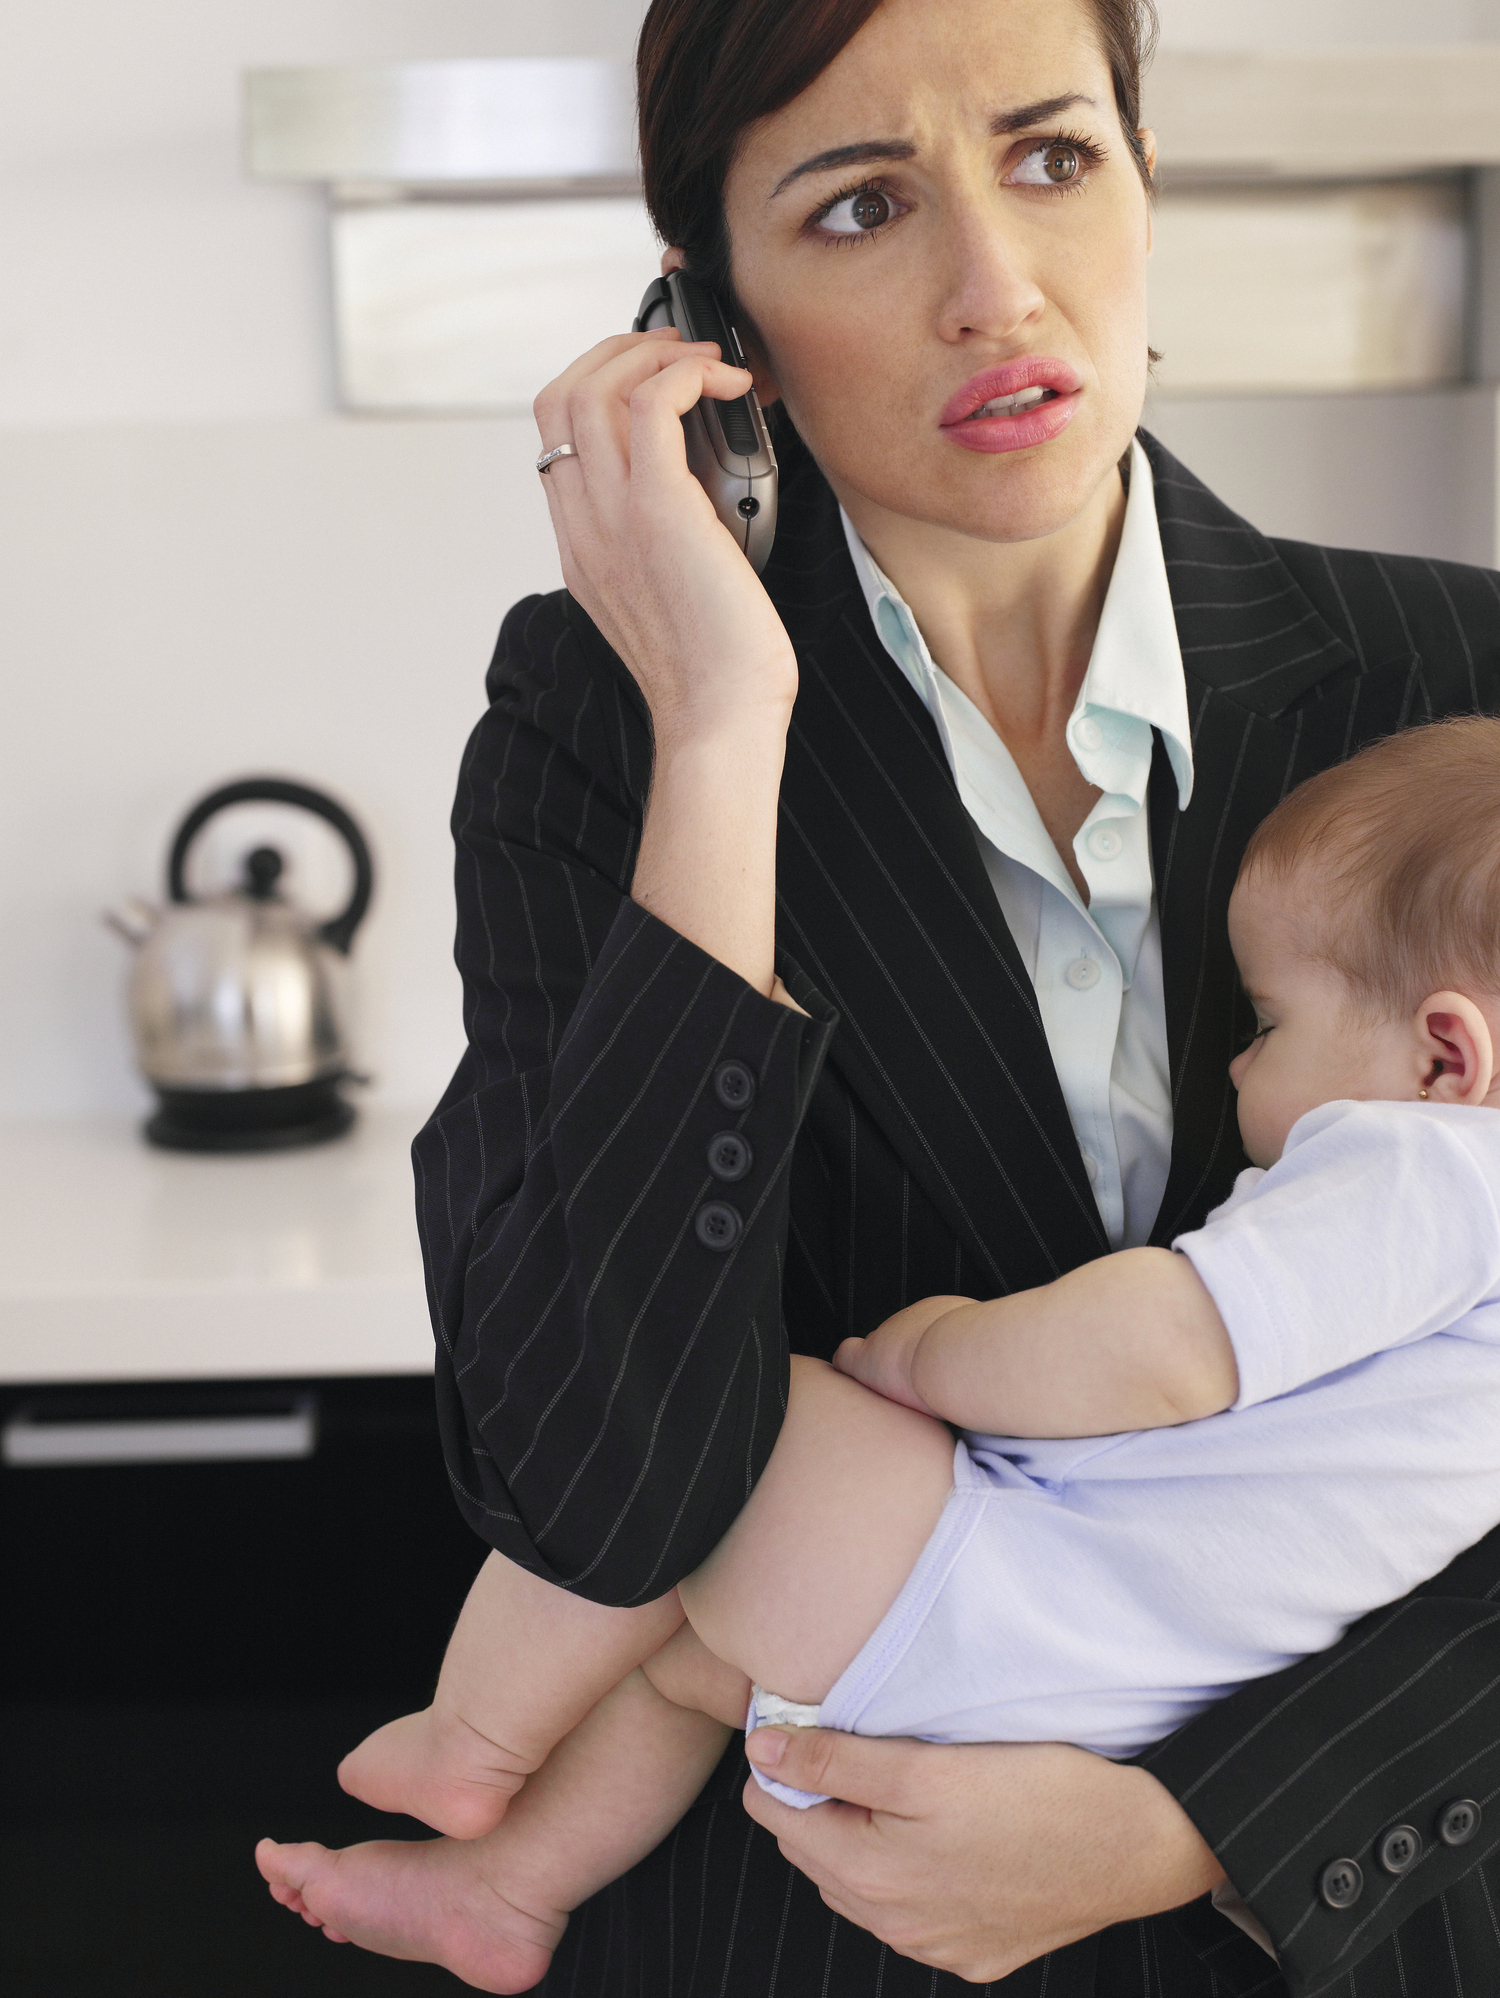 Télétravail : les femmes plus souvent interrompues par des tâches liées à la gestion du foyer